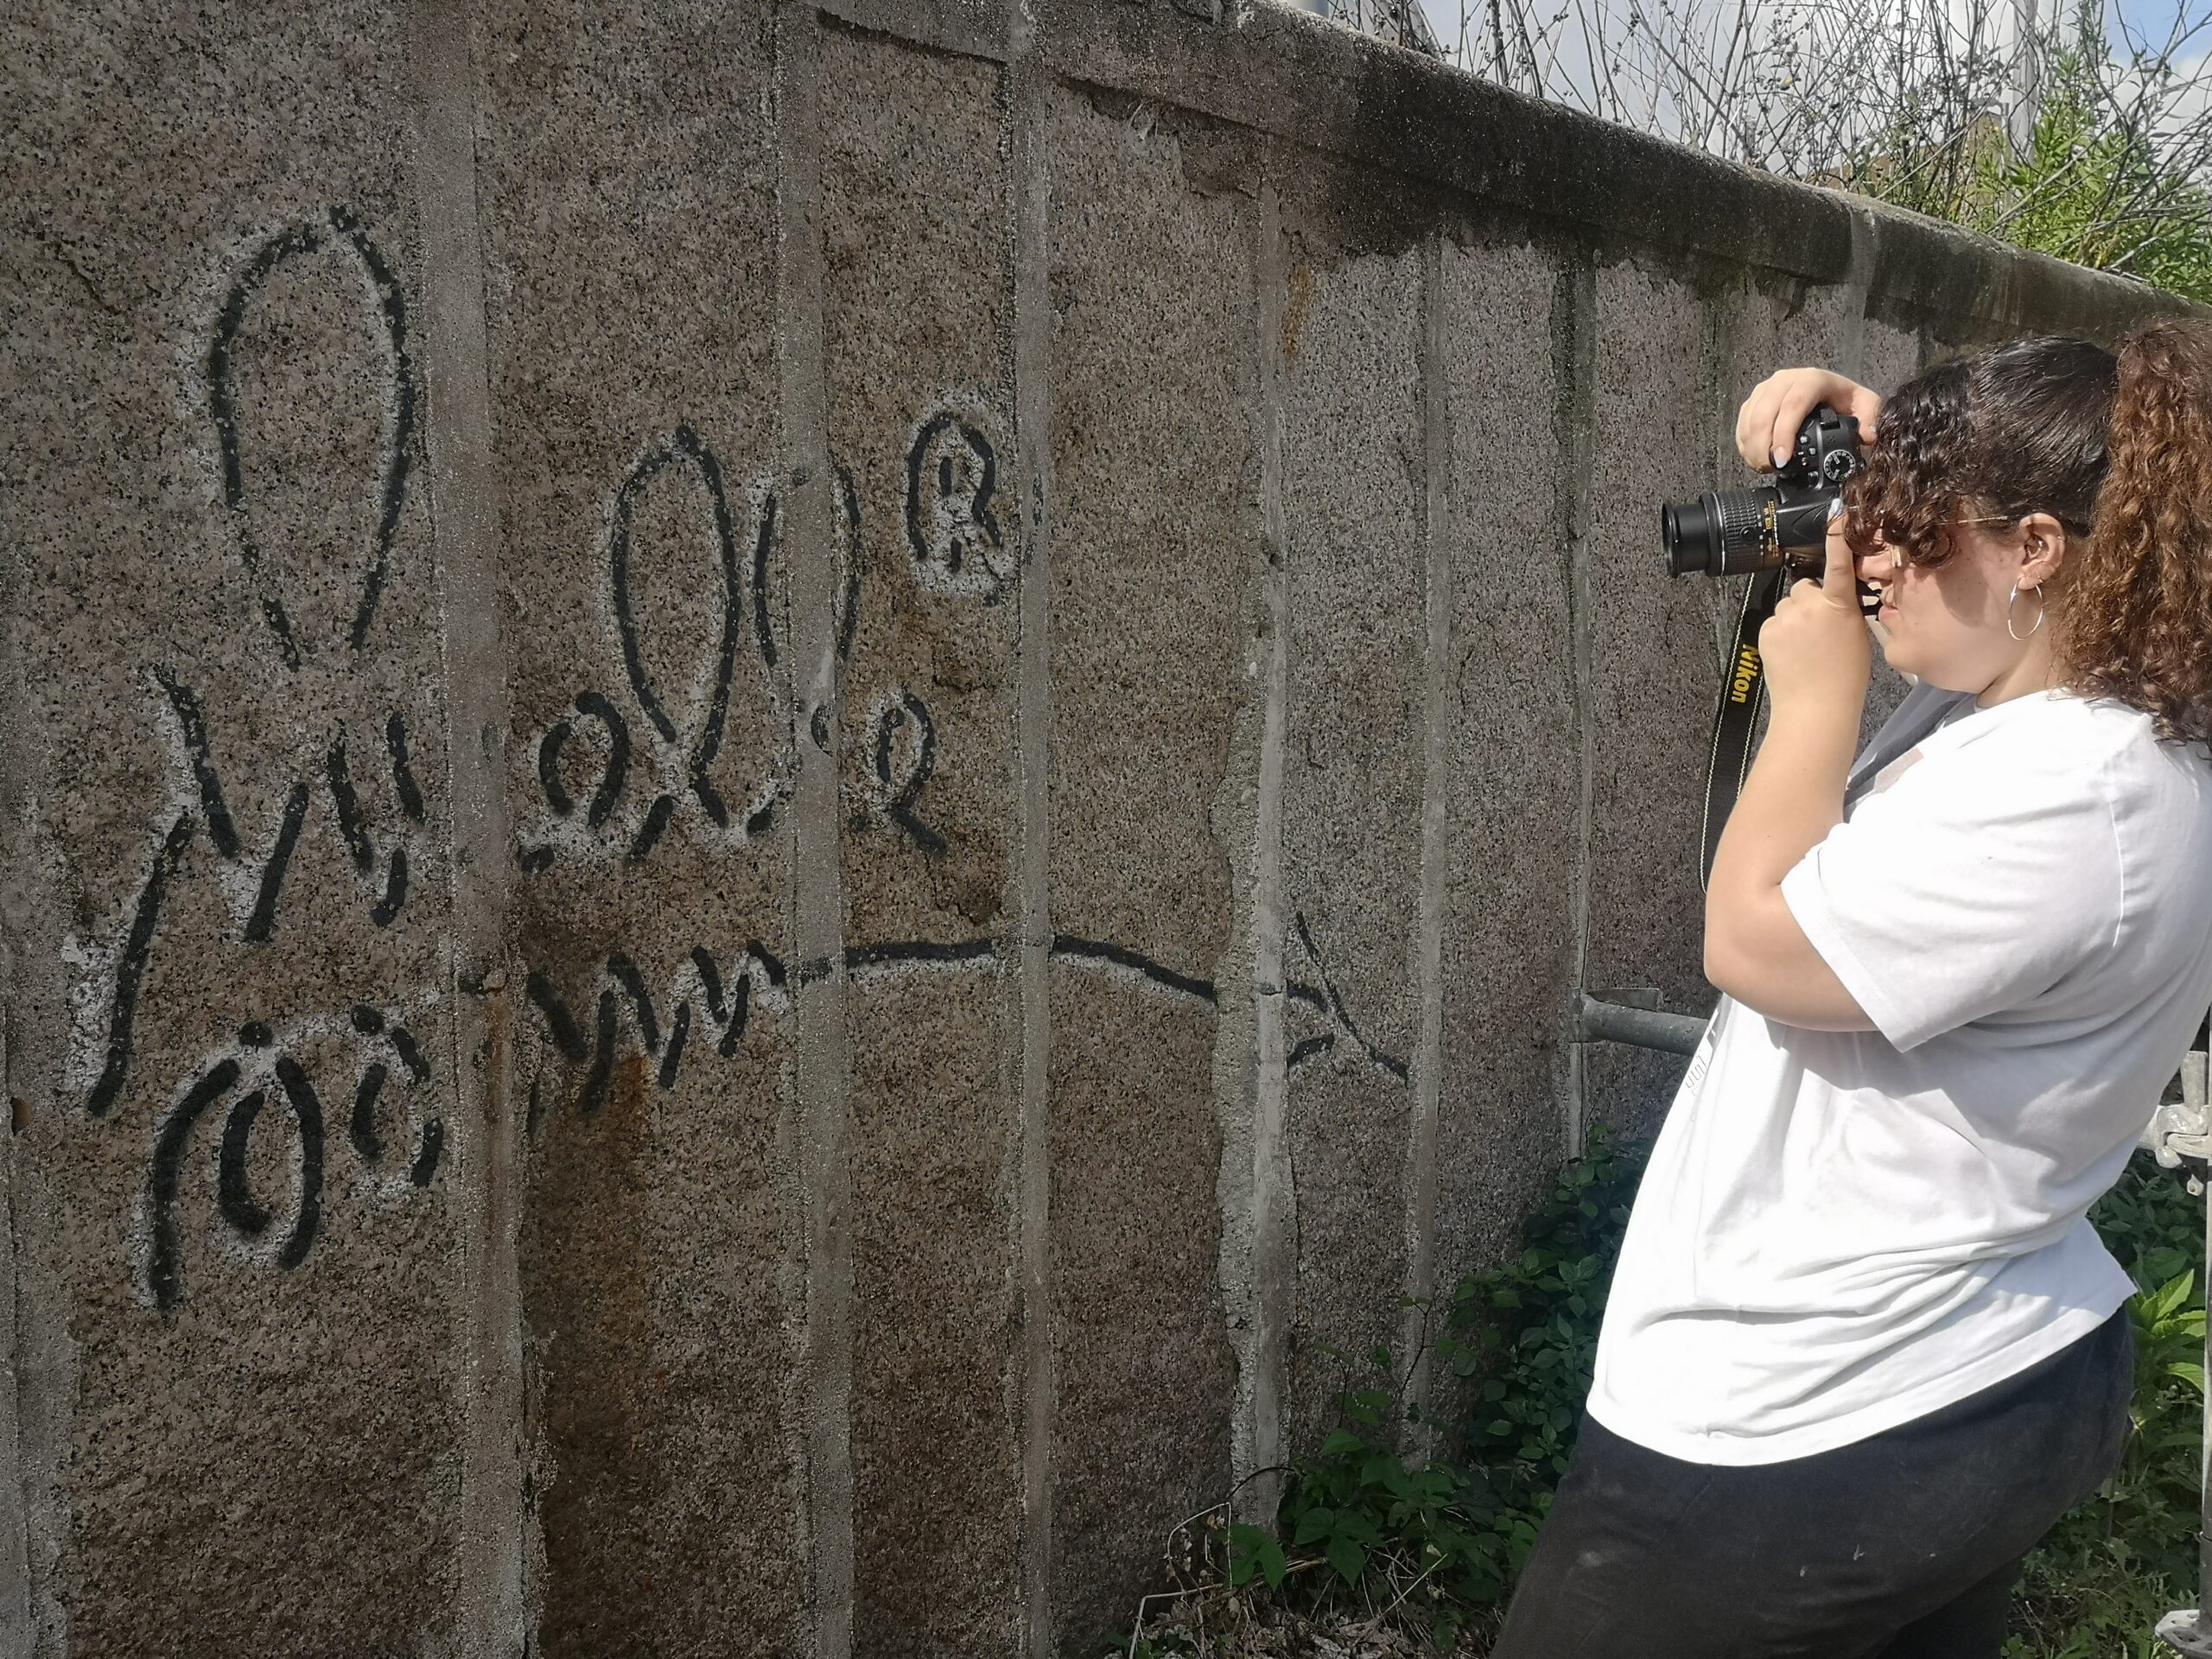 Estudo e intervención do grafiti de 'Muelle' en Vigo